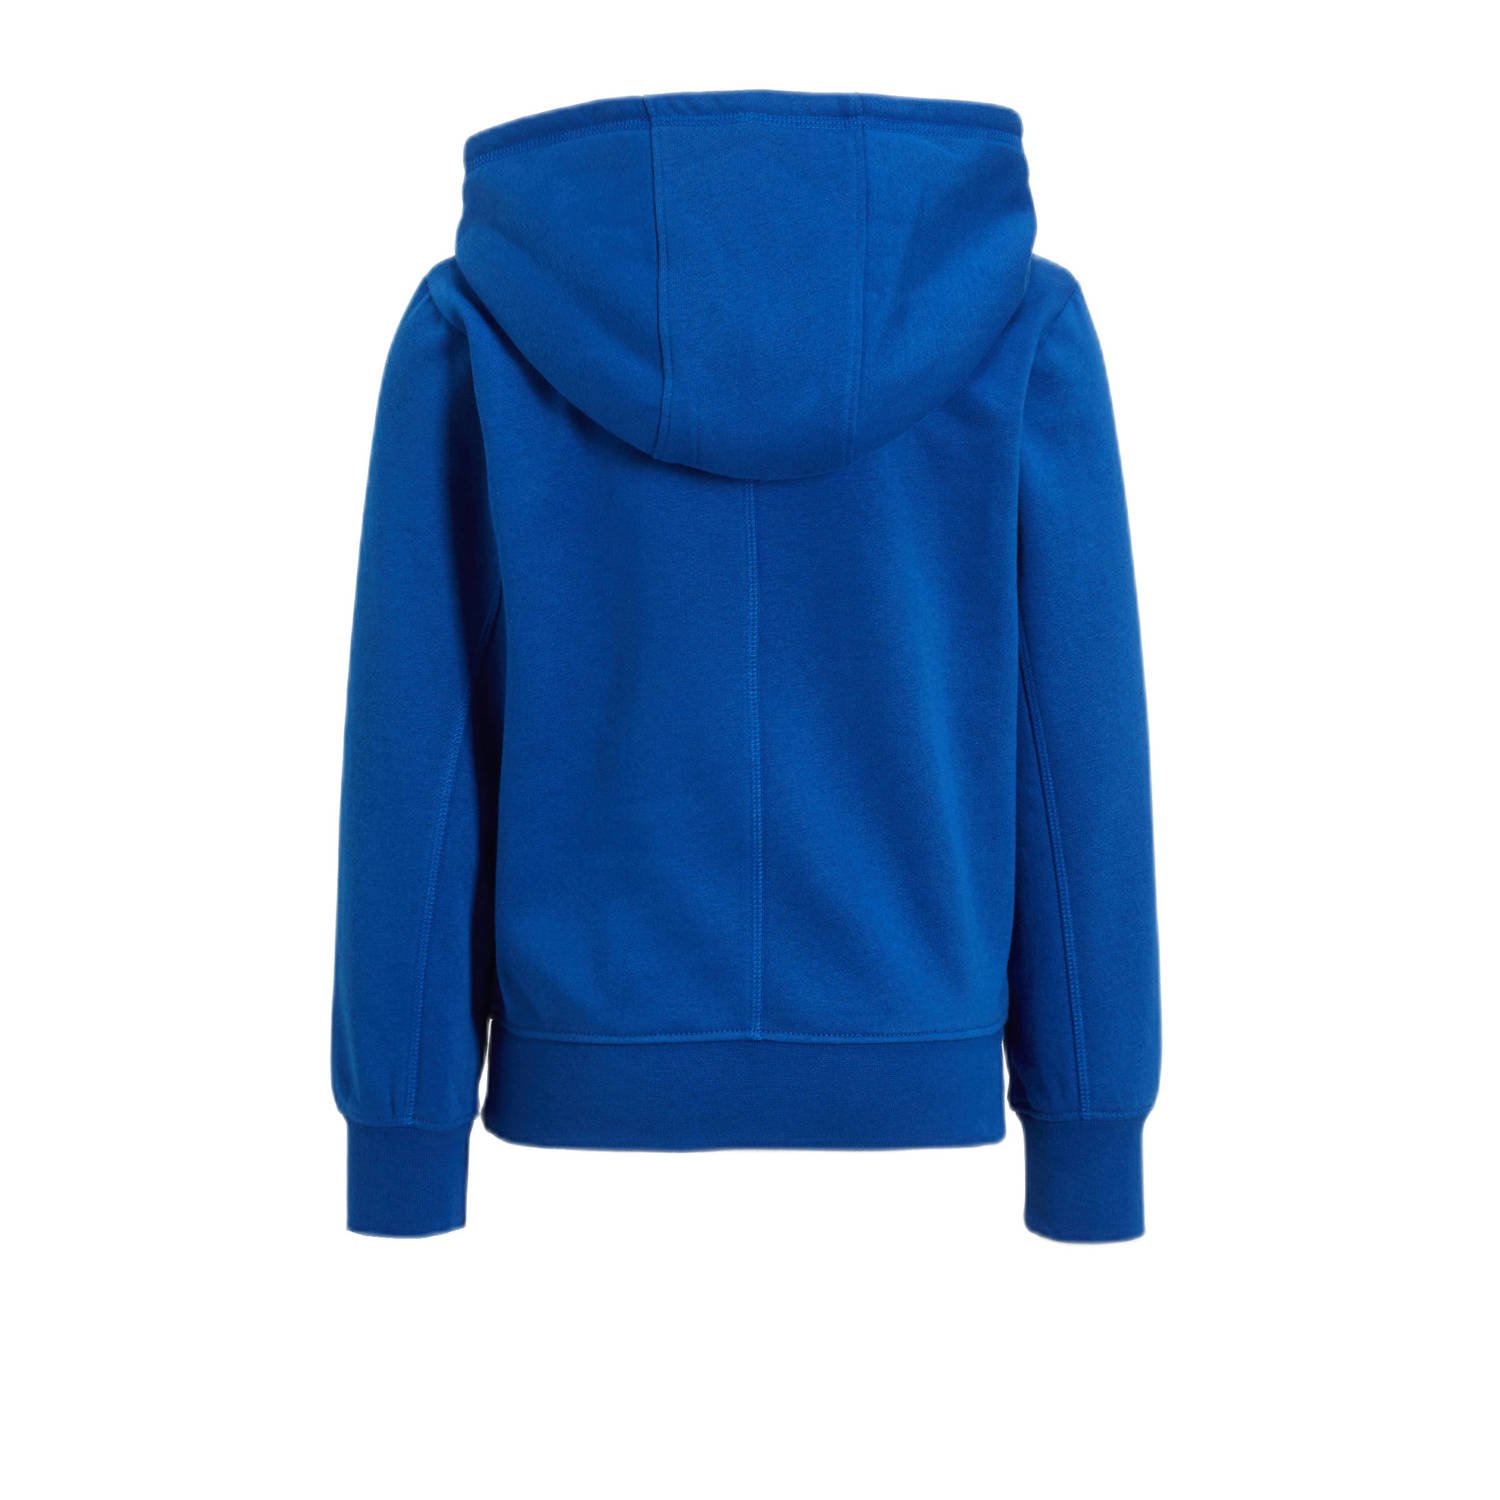 anytime hoodie met printopdruk blauw